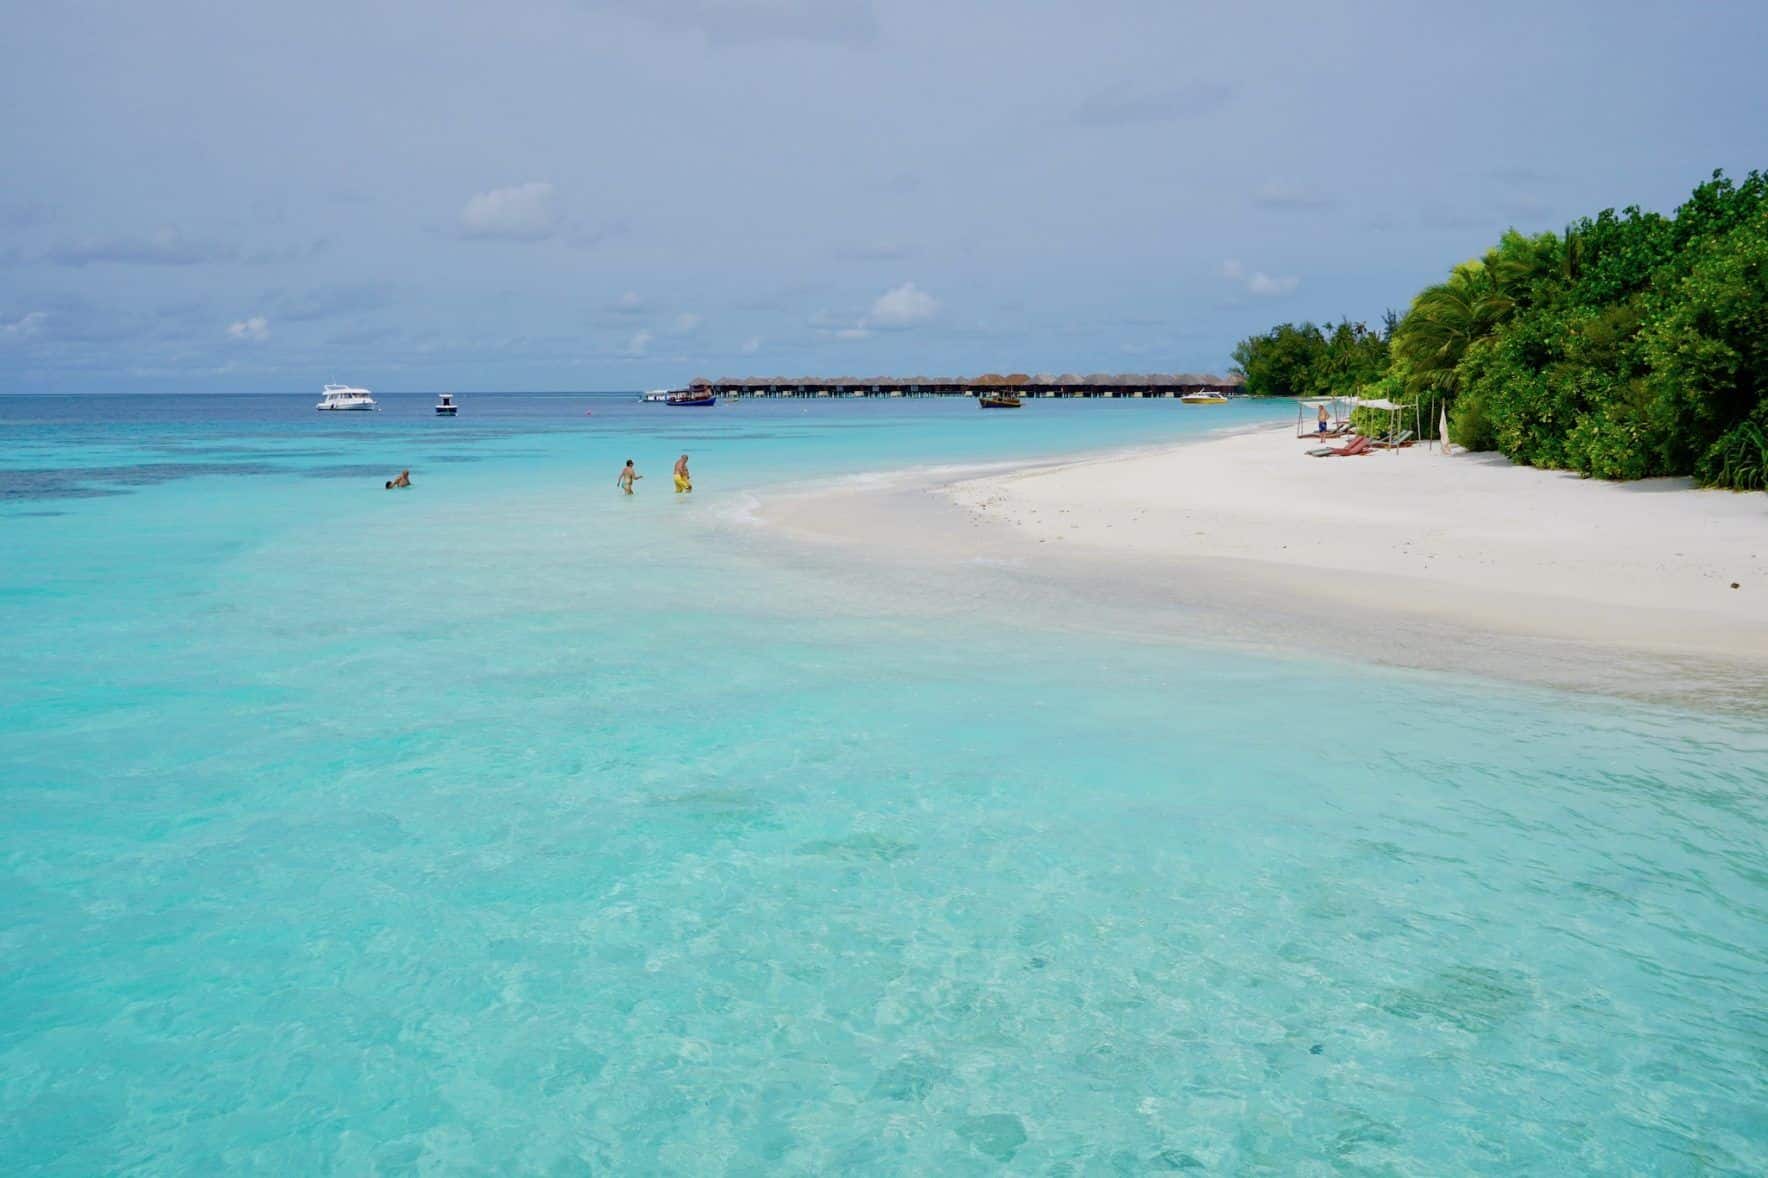 De lagune van Coco Bodu Hithi: Bij deze aanblik kun je gewoon de tijd in het water doorbrengen. Foto: Sascha Tegtmeyer Reisverslag Coco Bodu Hithi tips Malediven ervaringen